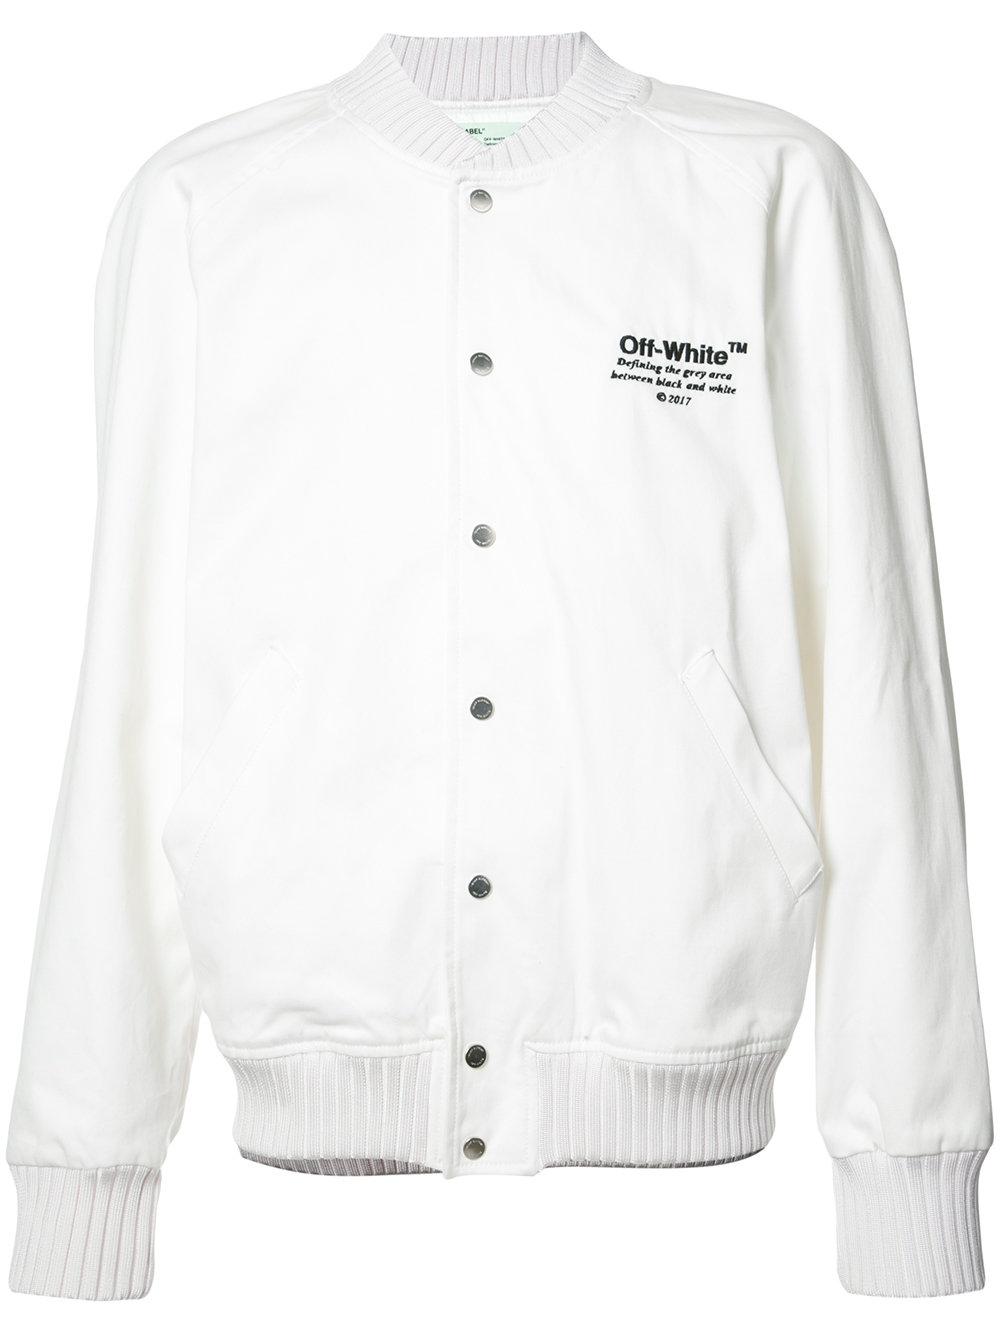 Off-white c/o virgil abloh Helvetica Varsity Jacket in White for Men | Lyst